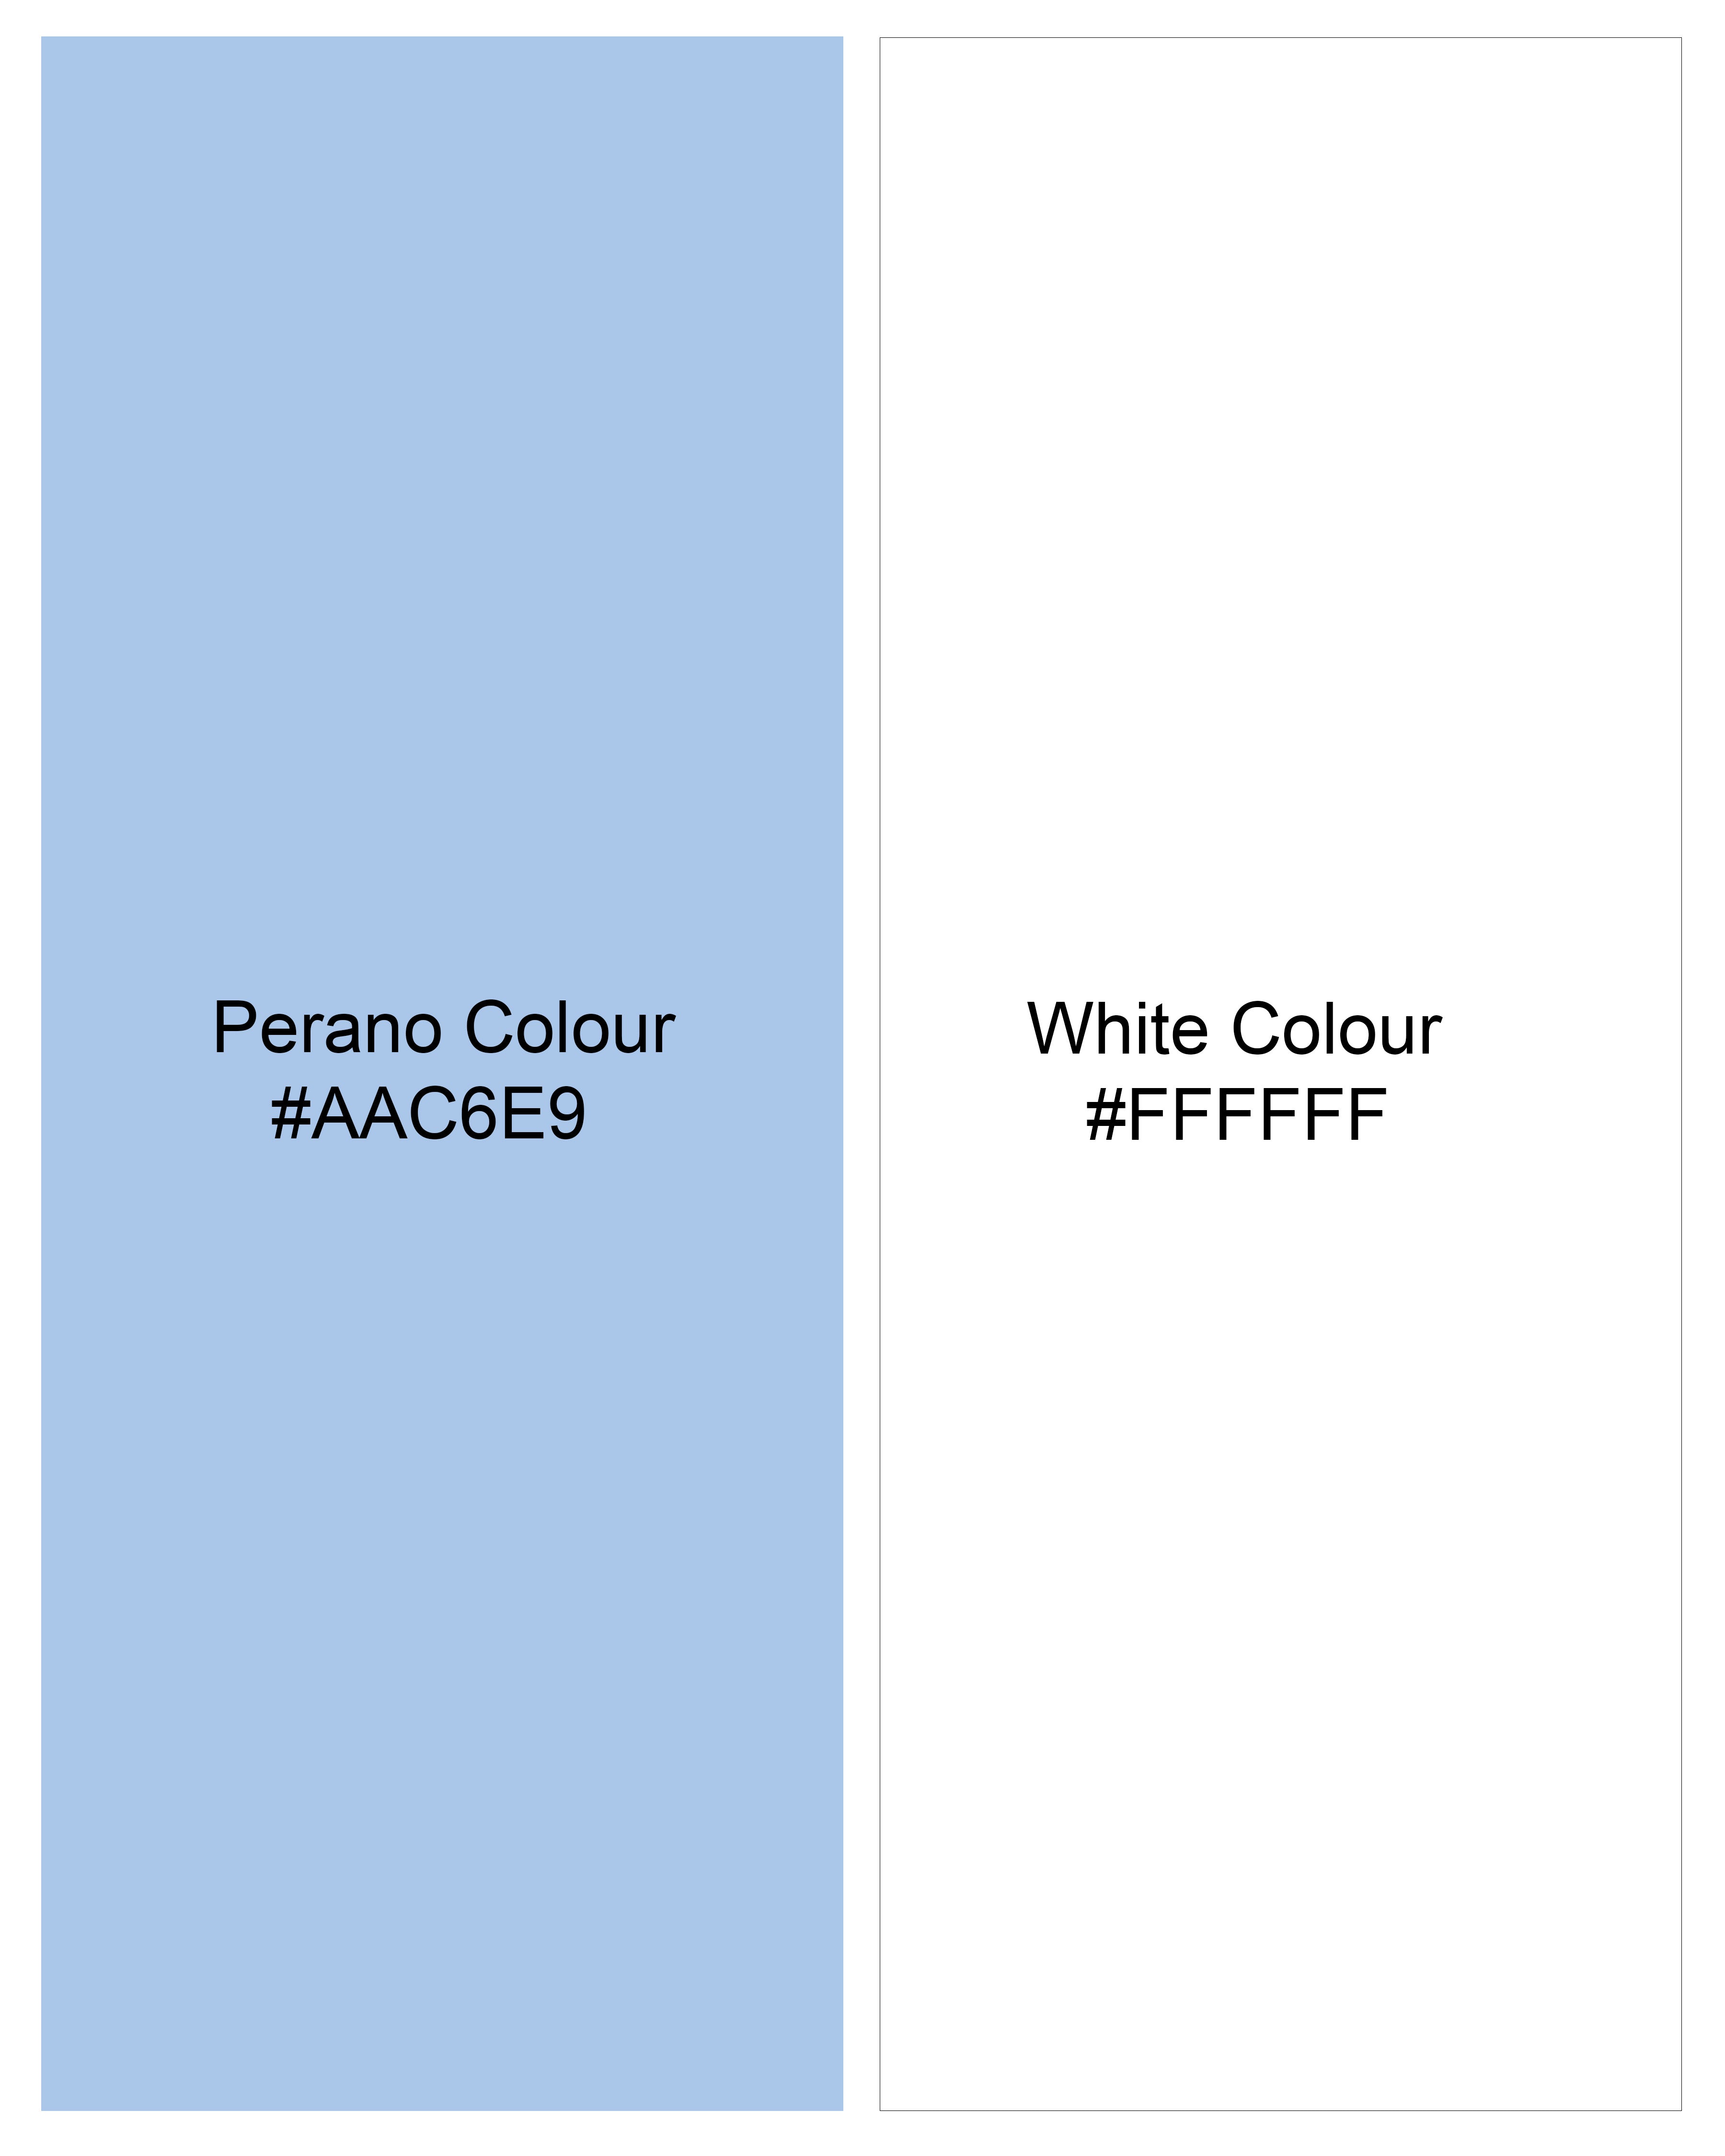 Perano Blue and White Premium Cotton Designer Shirt 9335-P246-38, 9335-P246-H-38, 9335-P246-39, 9335-P246-H-39, 9335-P246-40, 9335-P246-H-40, 9335-P246-42, 9335-P246-H-42, 9335-P246-44, 9335-P246-H-44, 9335-P246-46, 9335-P246-H-46, 9335-P246-48, 9335-P246-H-48, 9335-P246-50, 9335-P246-H-50, 9335-P246-52, 9335-P246-H-52